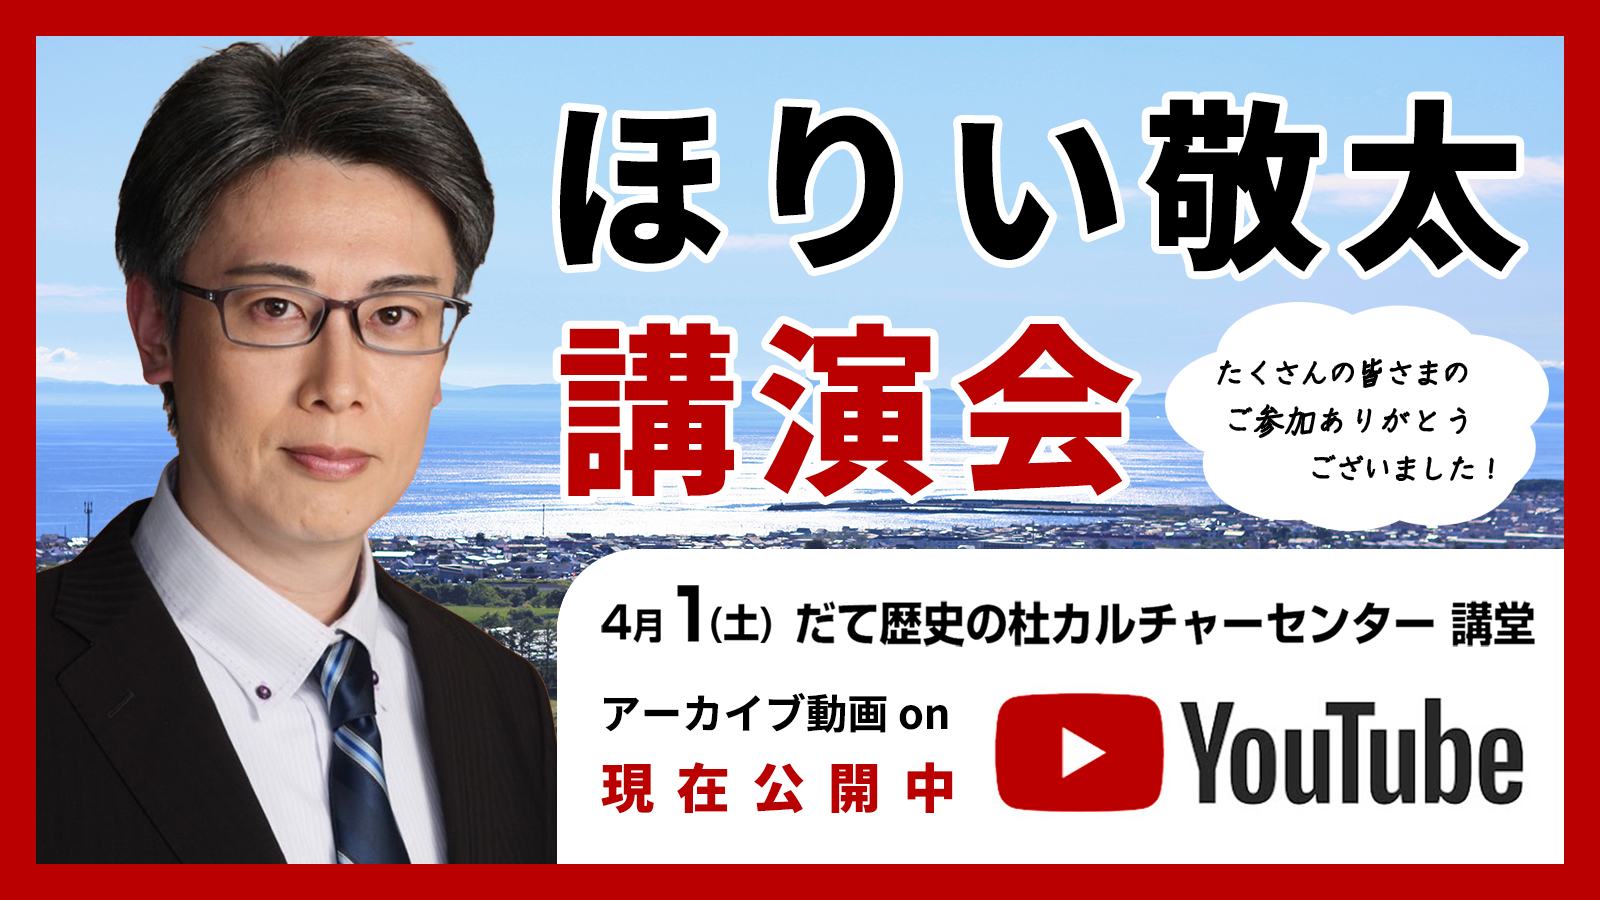 ほりい敬太講演会 YouTube動画公開中！